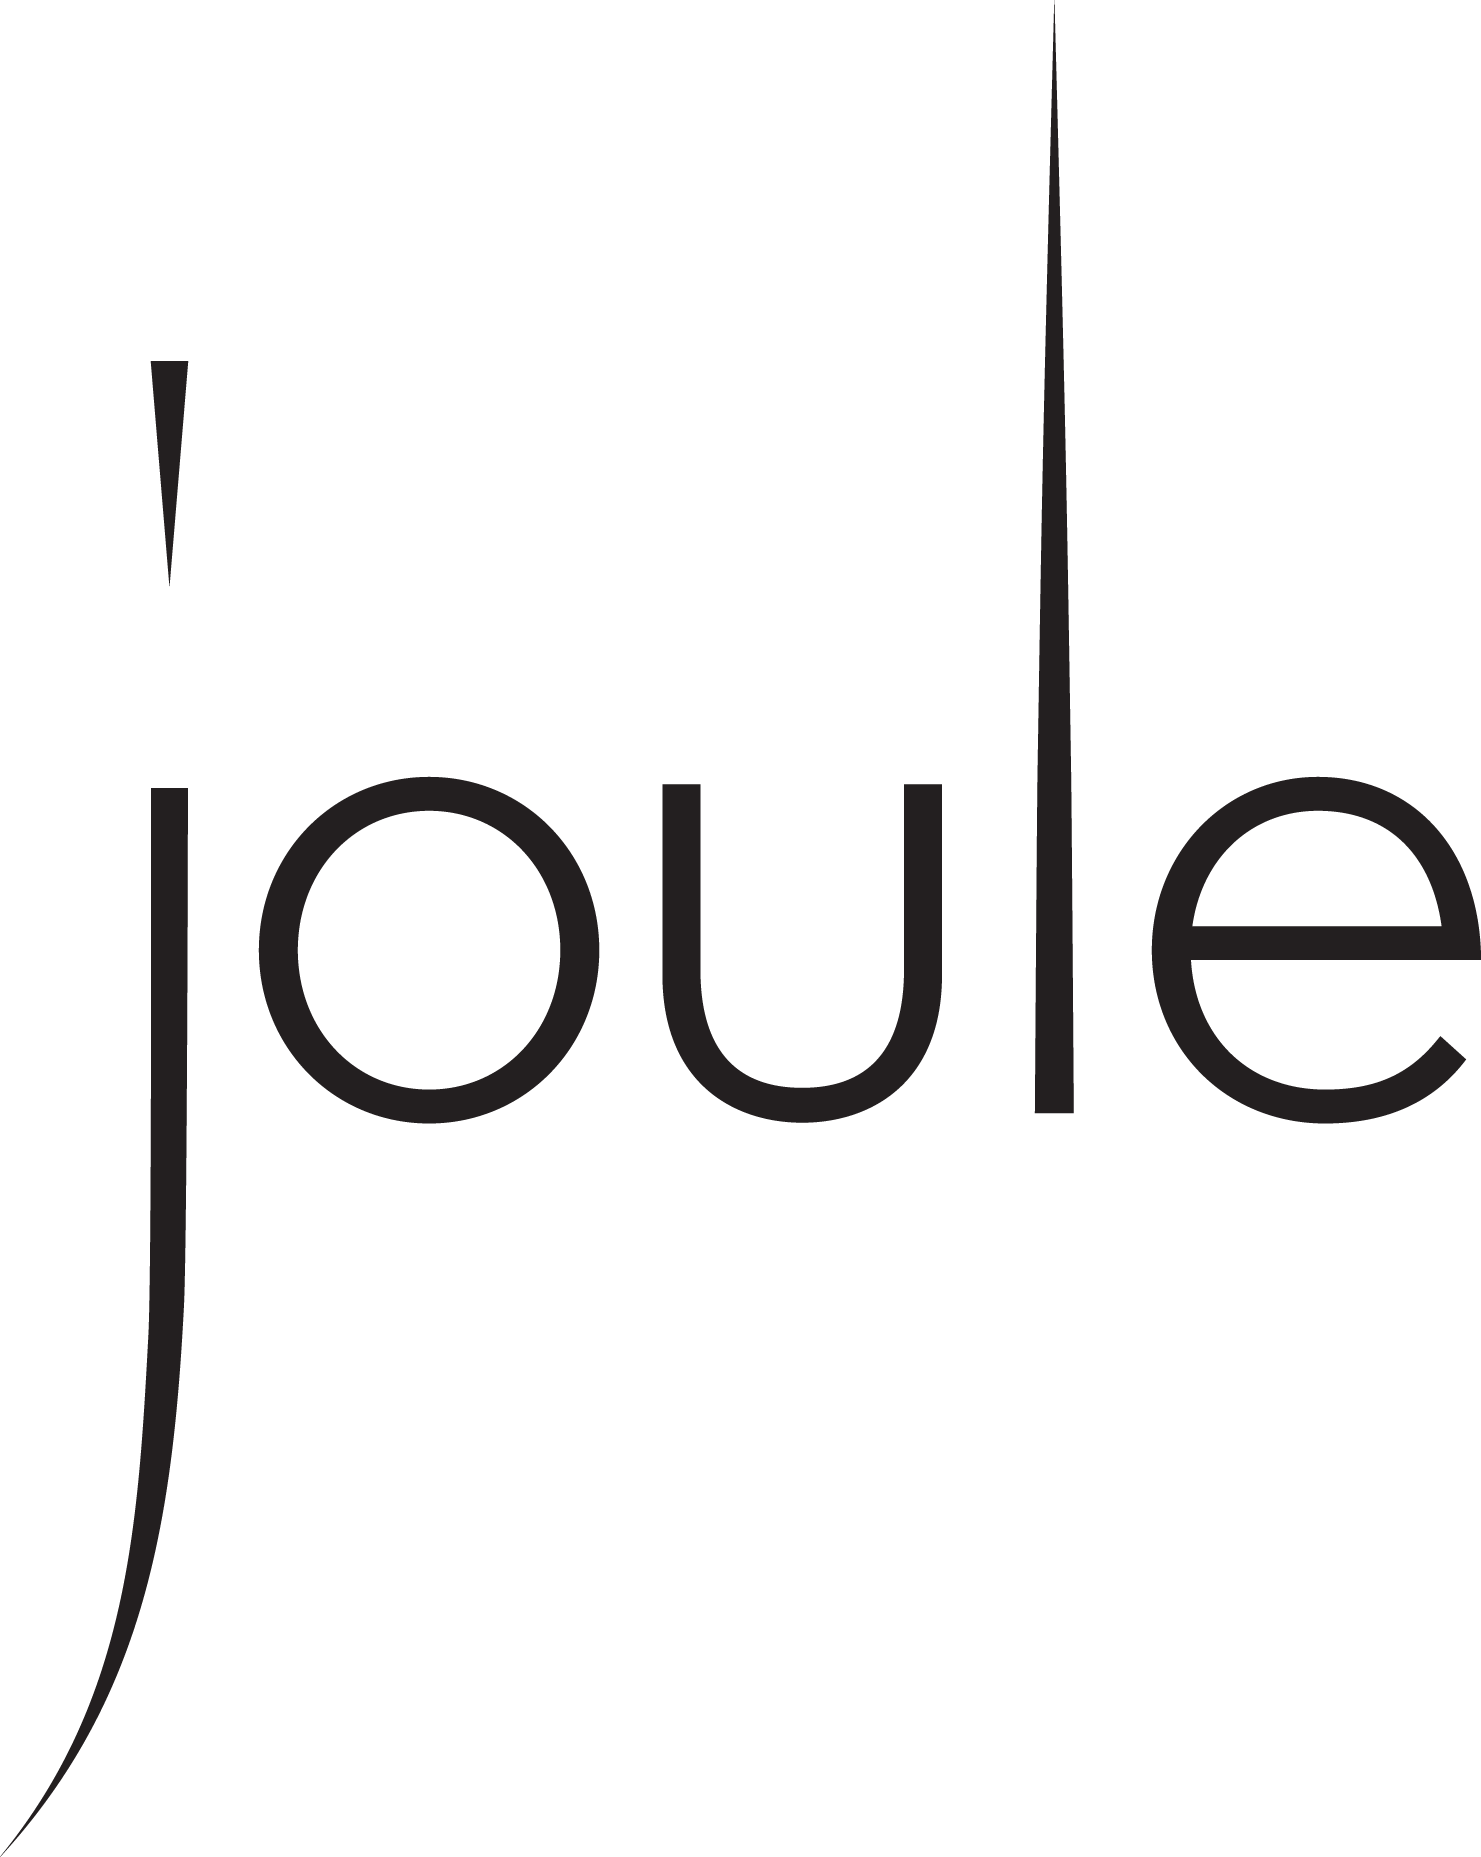 Joule_Logo_black_bw.png